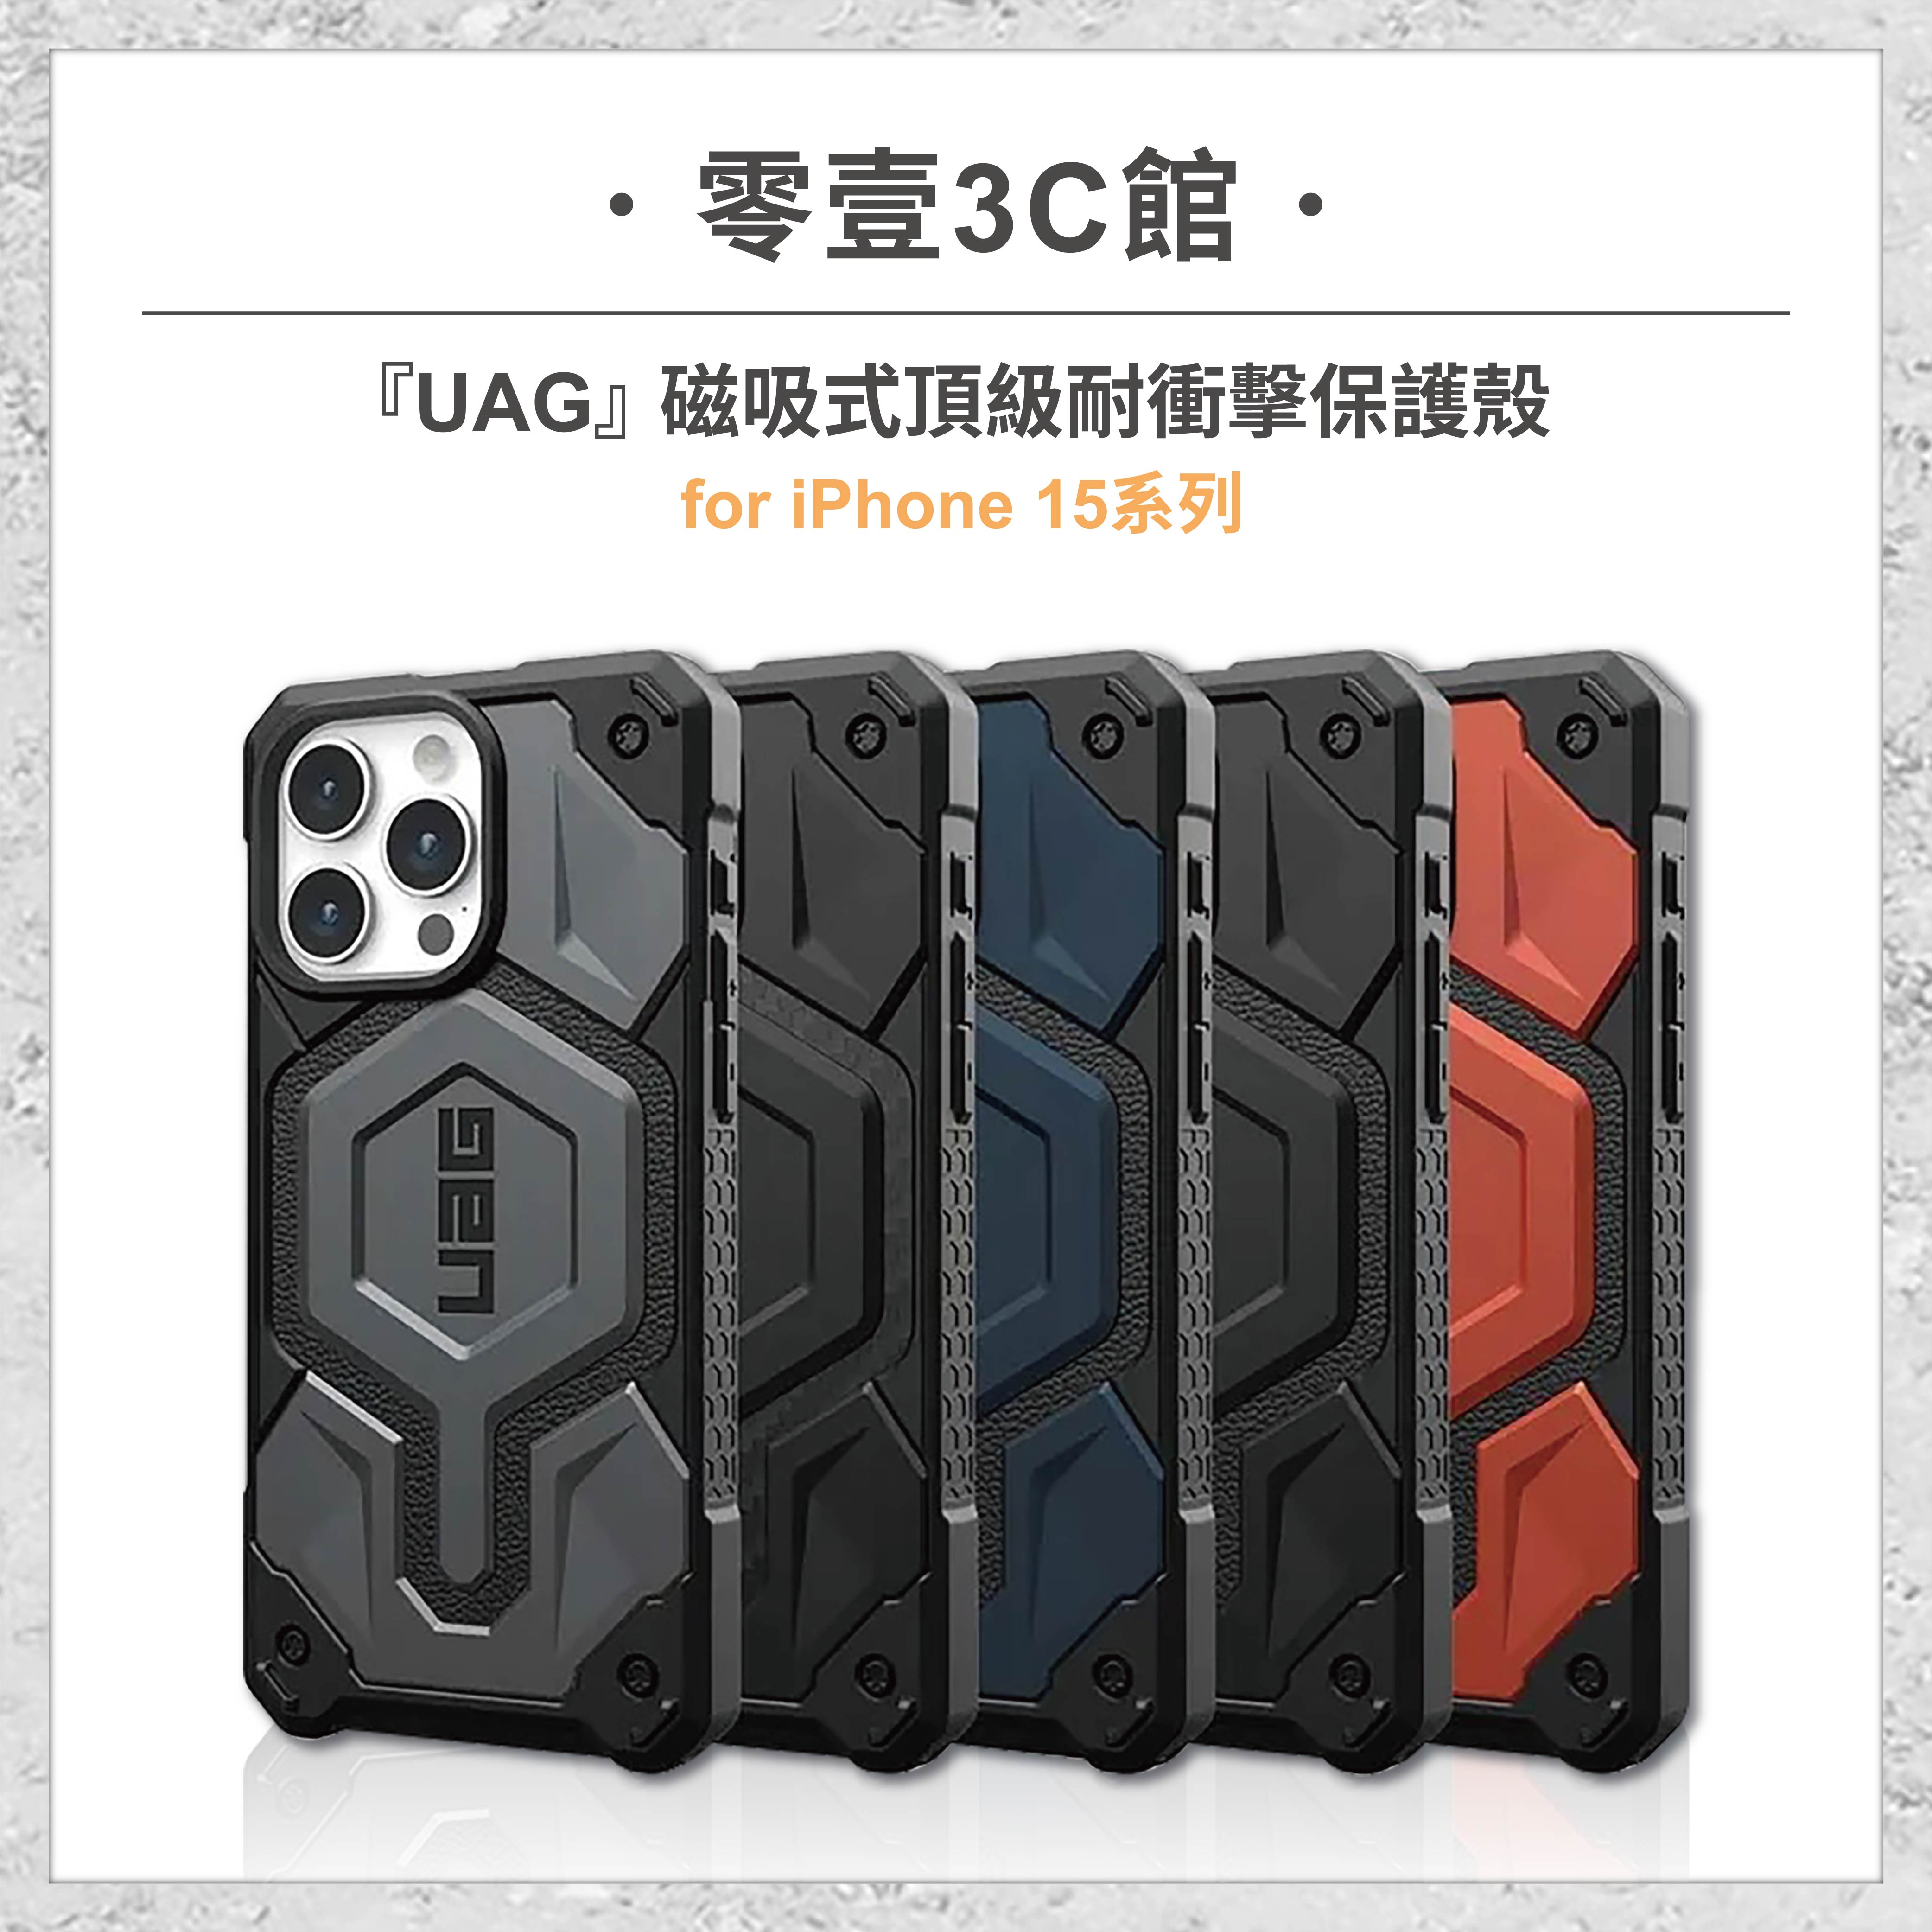 『UAG』磁吸式頂級耐衝擊保護殼 for iPhone15系列 15 15 Plus 15 Pro 15 Pro Max MagSafe磁吸式手機殼 手機防摔保護殼 防摔手機殼